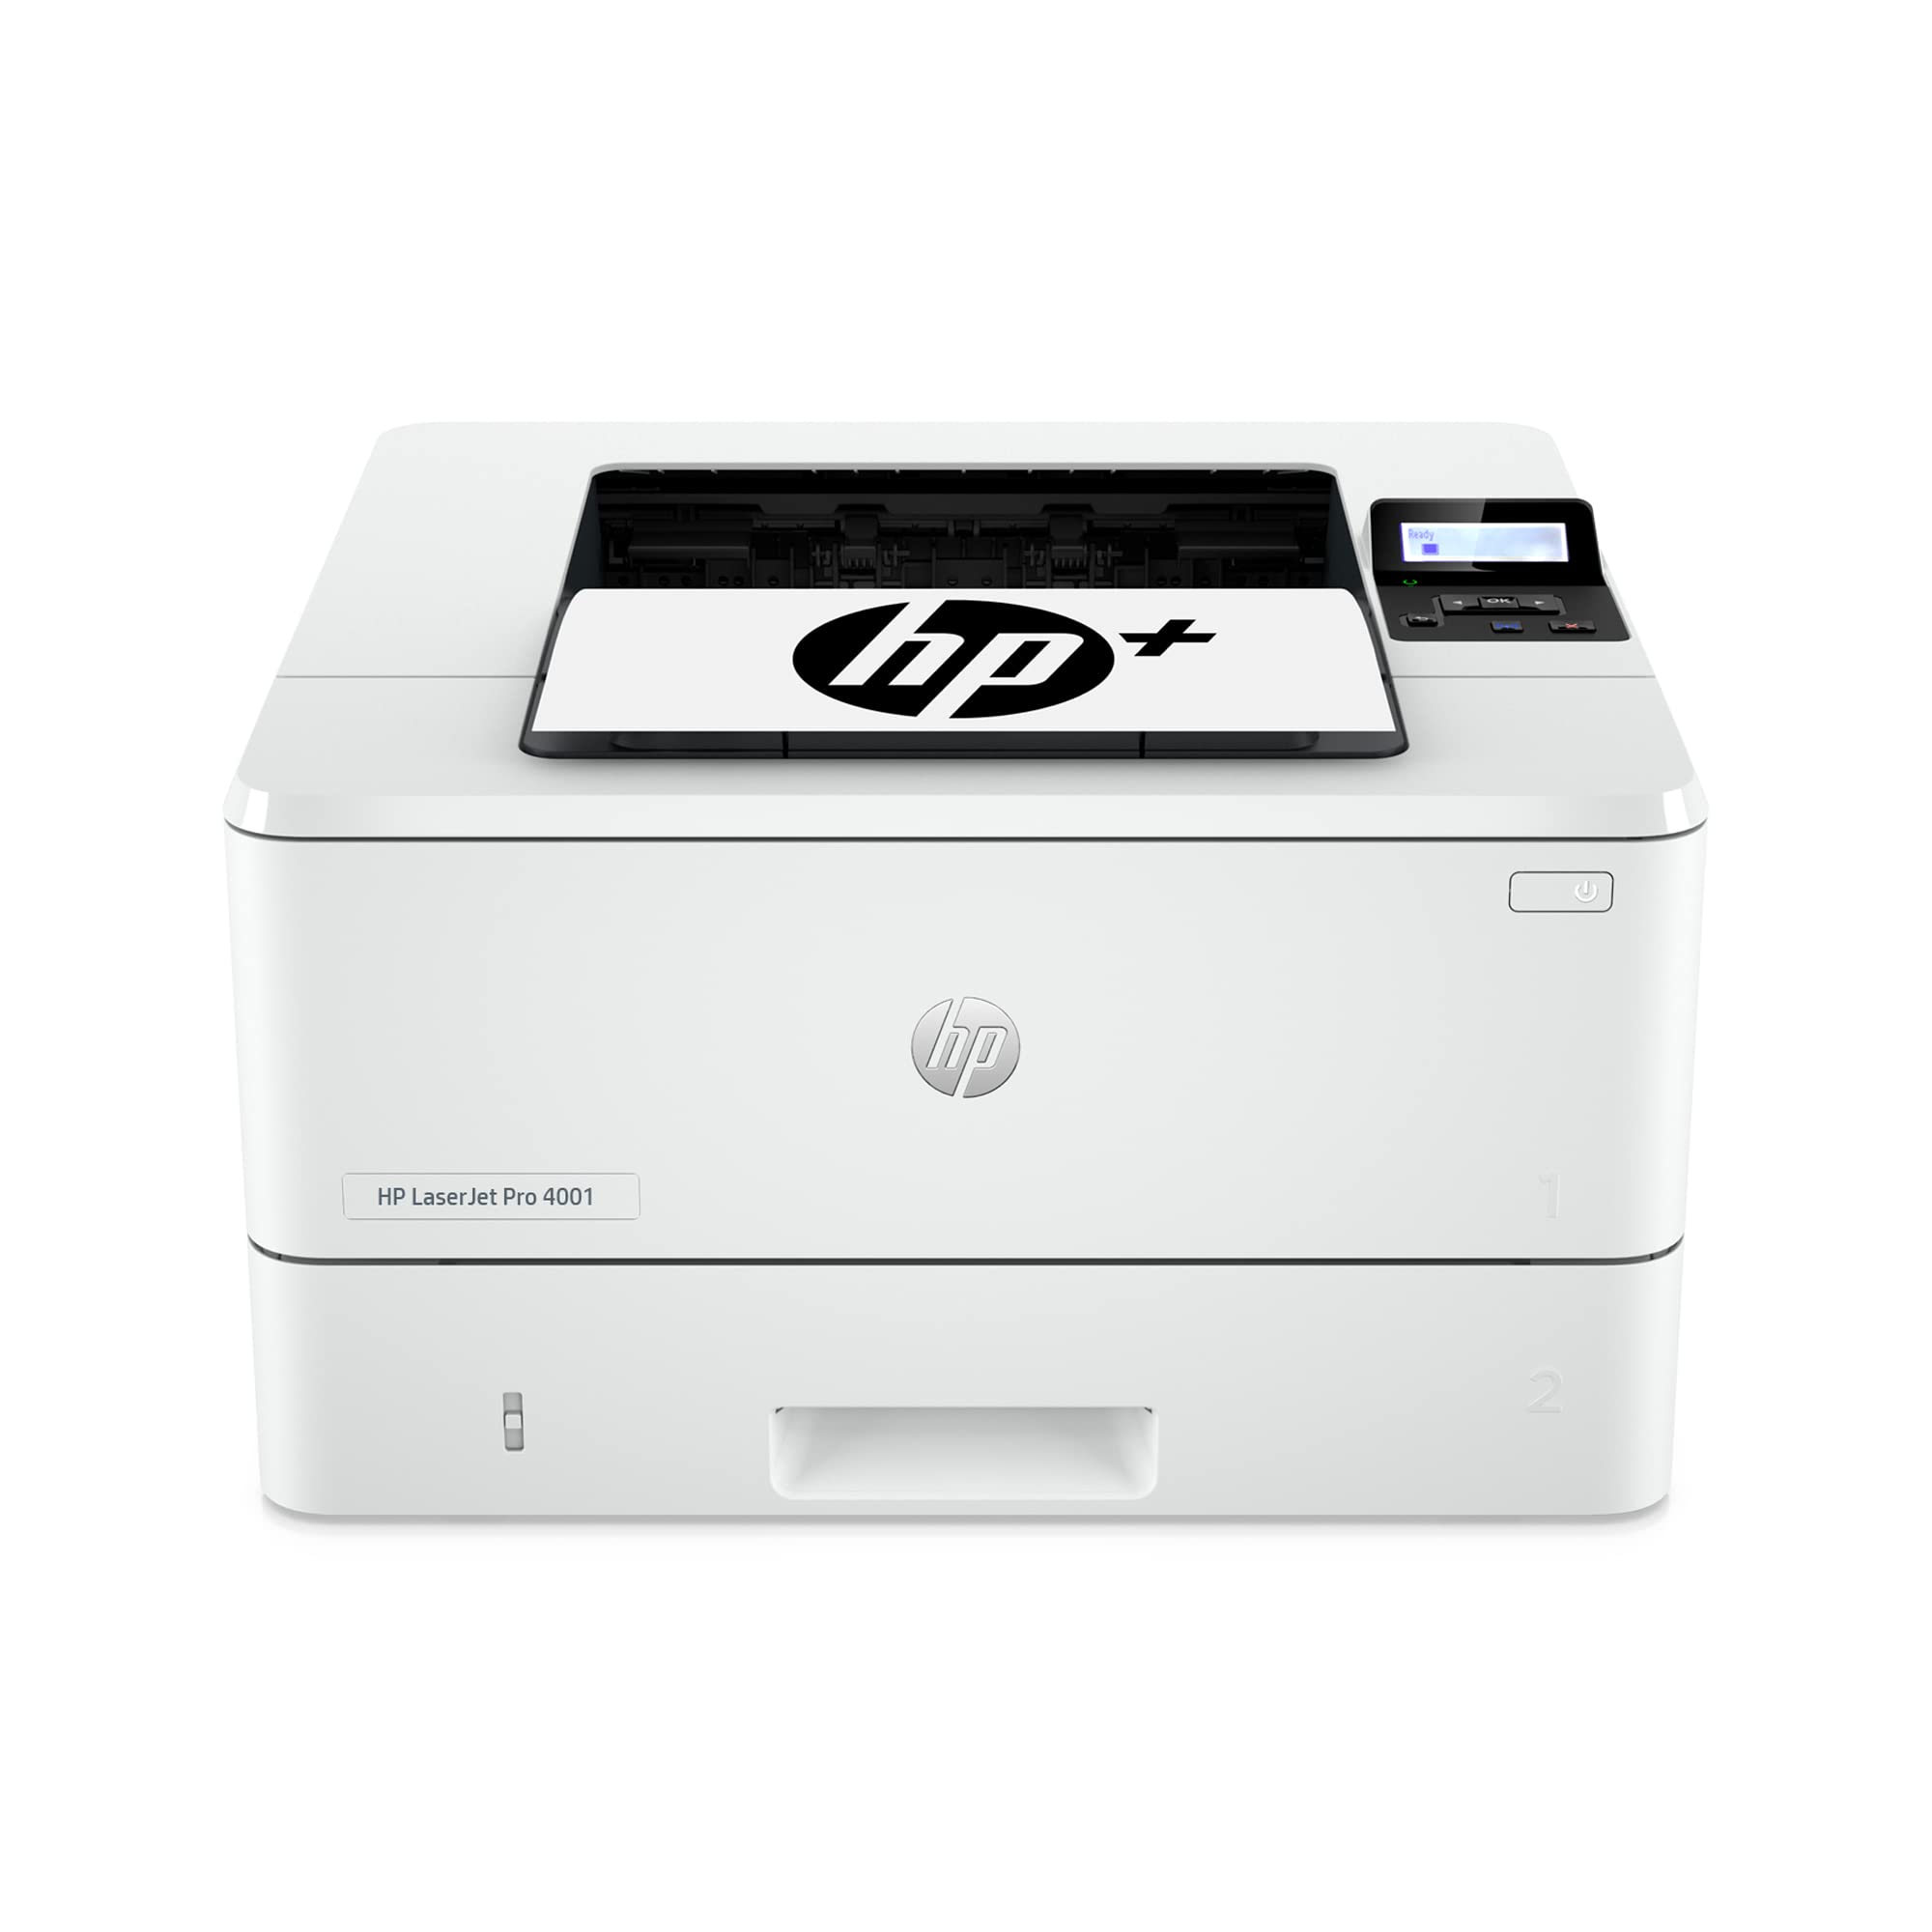 HP LaserJet Pro 4001dwe 无线黑白打印机 + 智能办公功能...